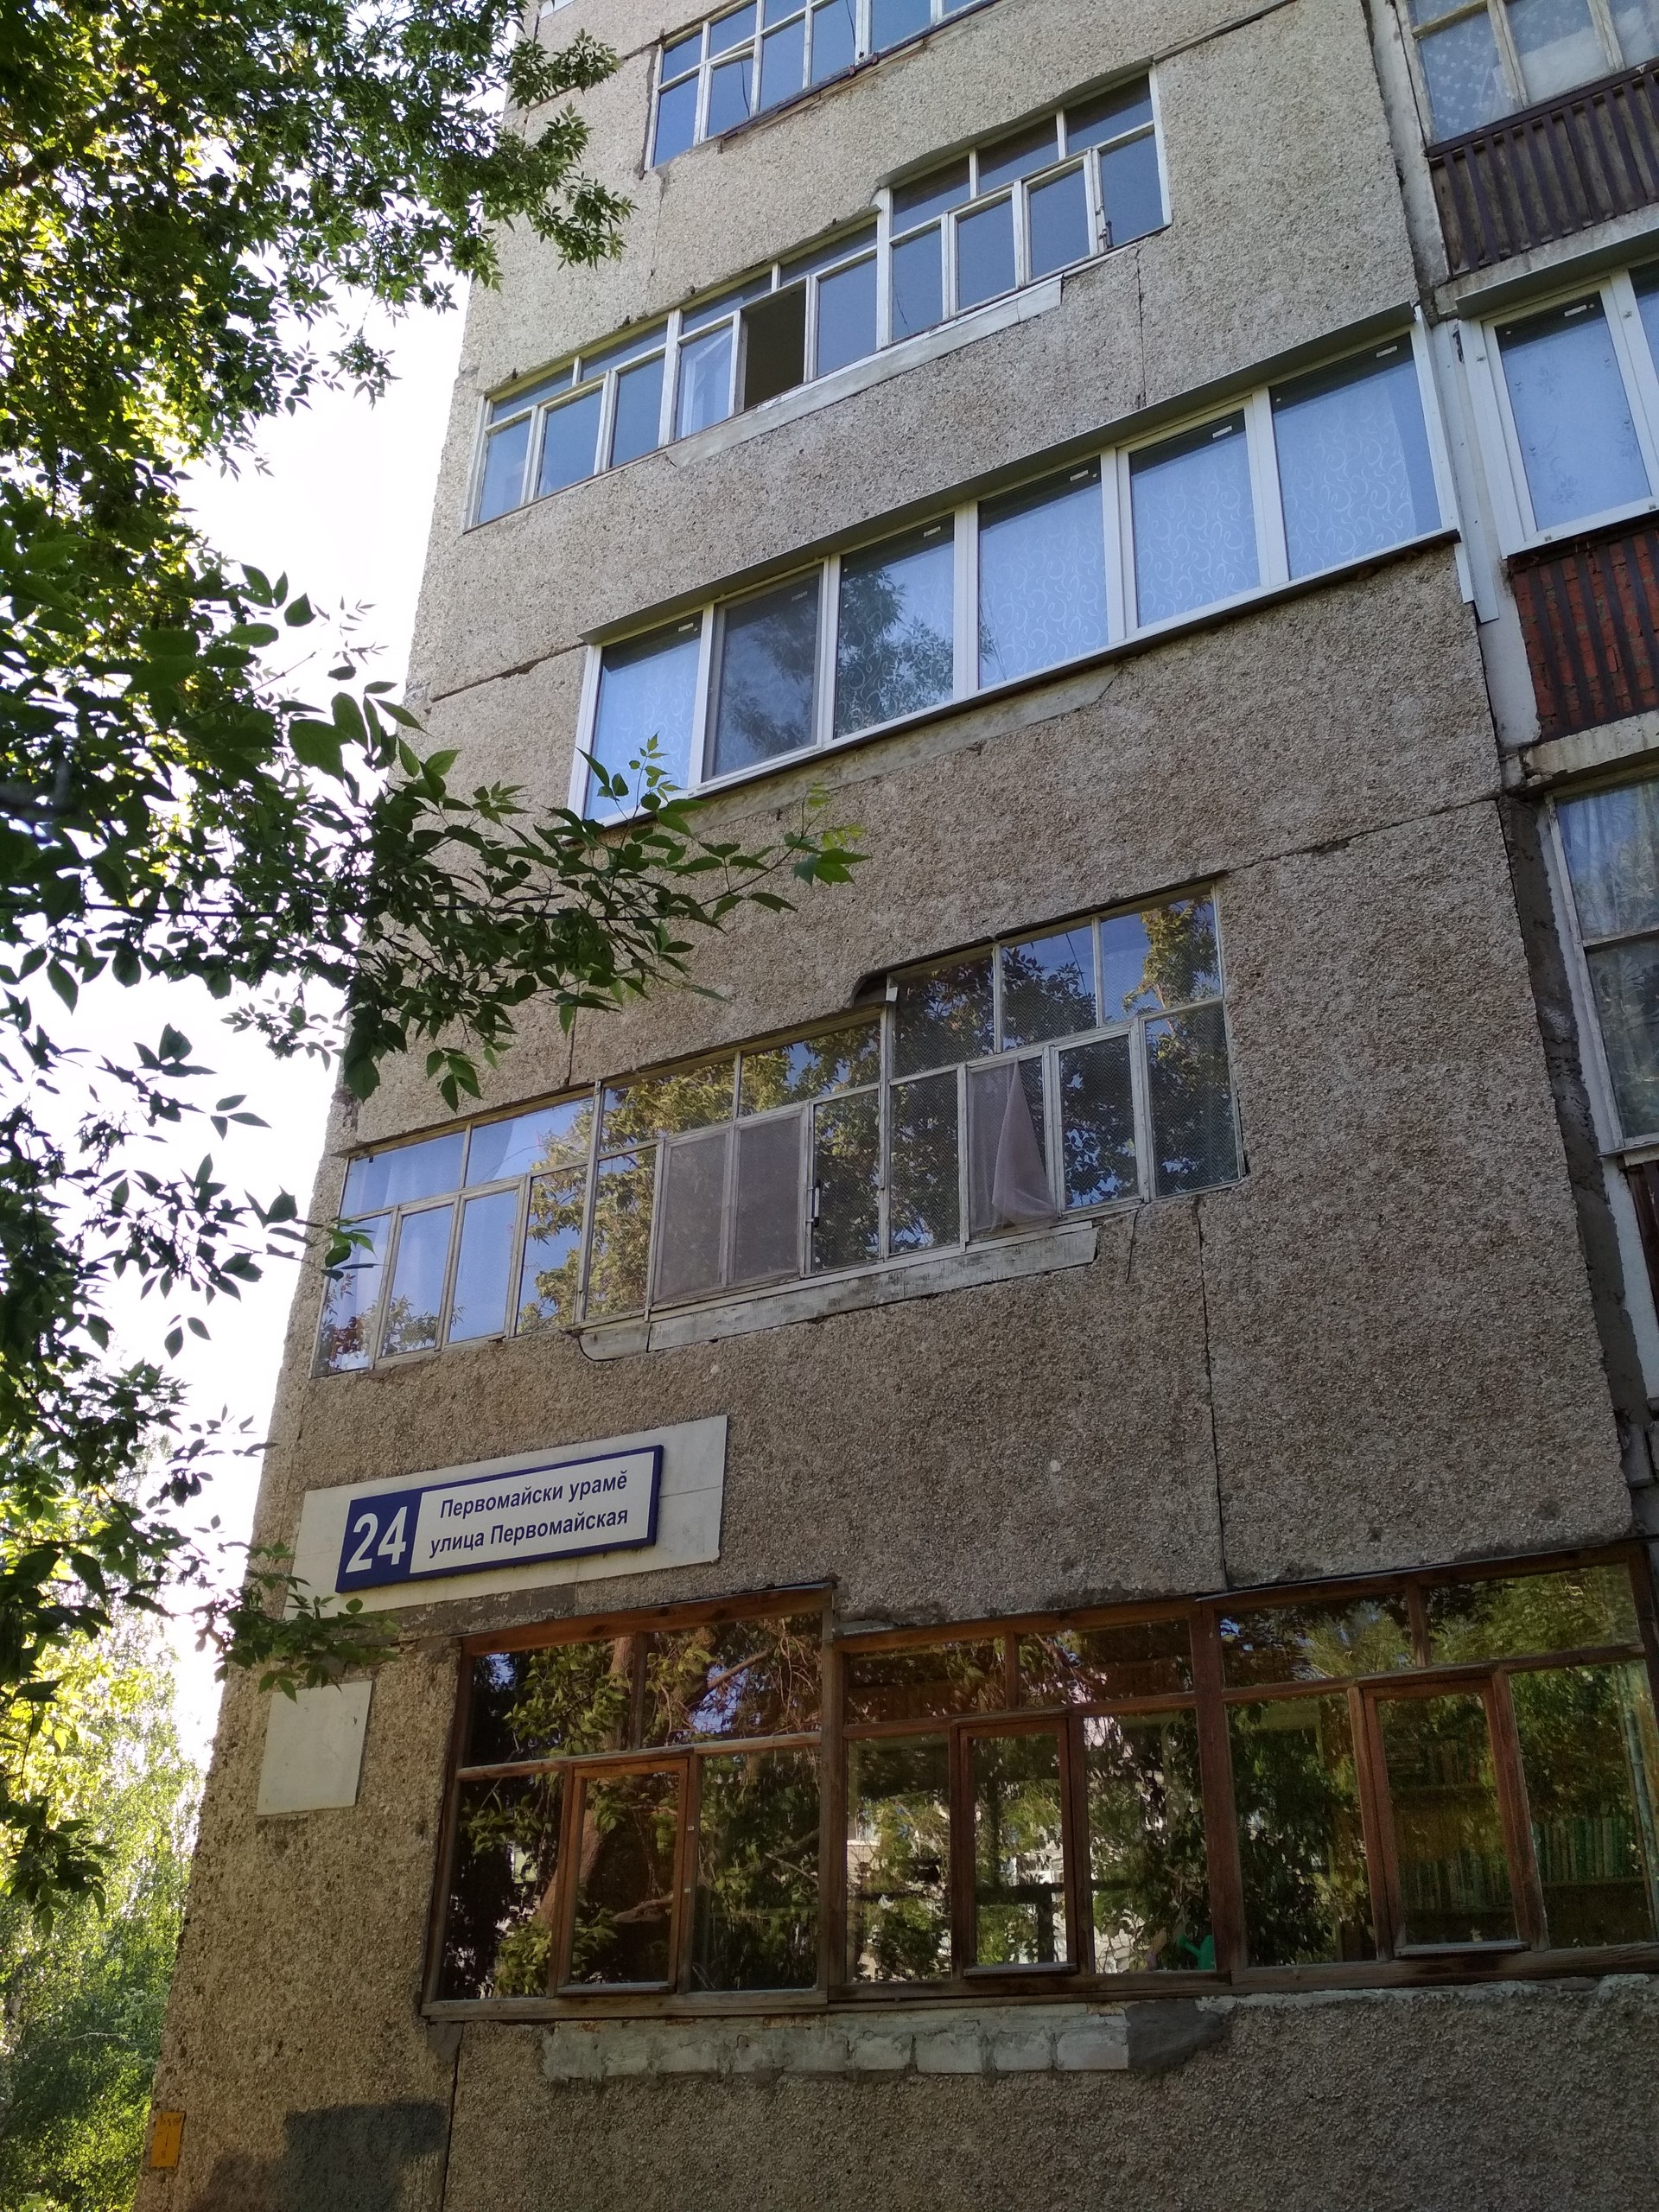 Респ. Чувашская, г. Новочебоксарск, ул. Первомайская, д. 24-фасад здания